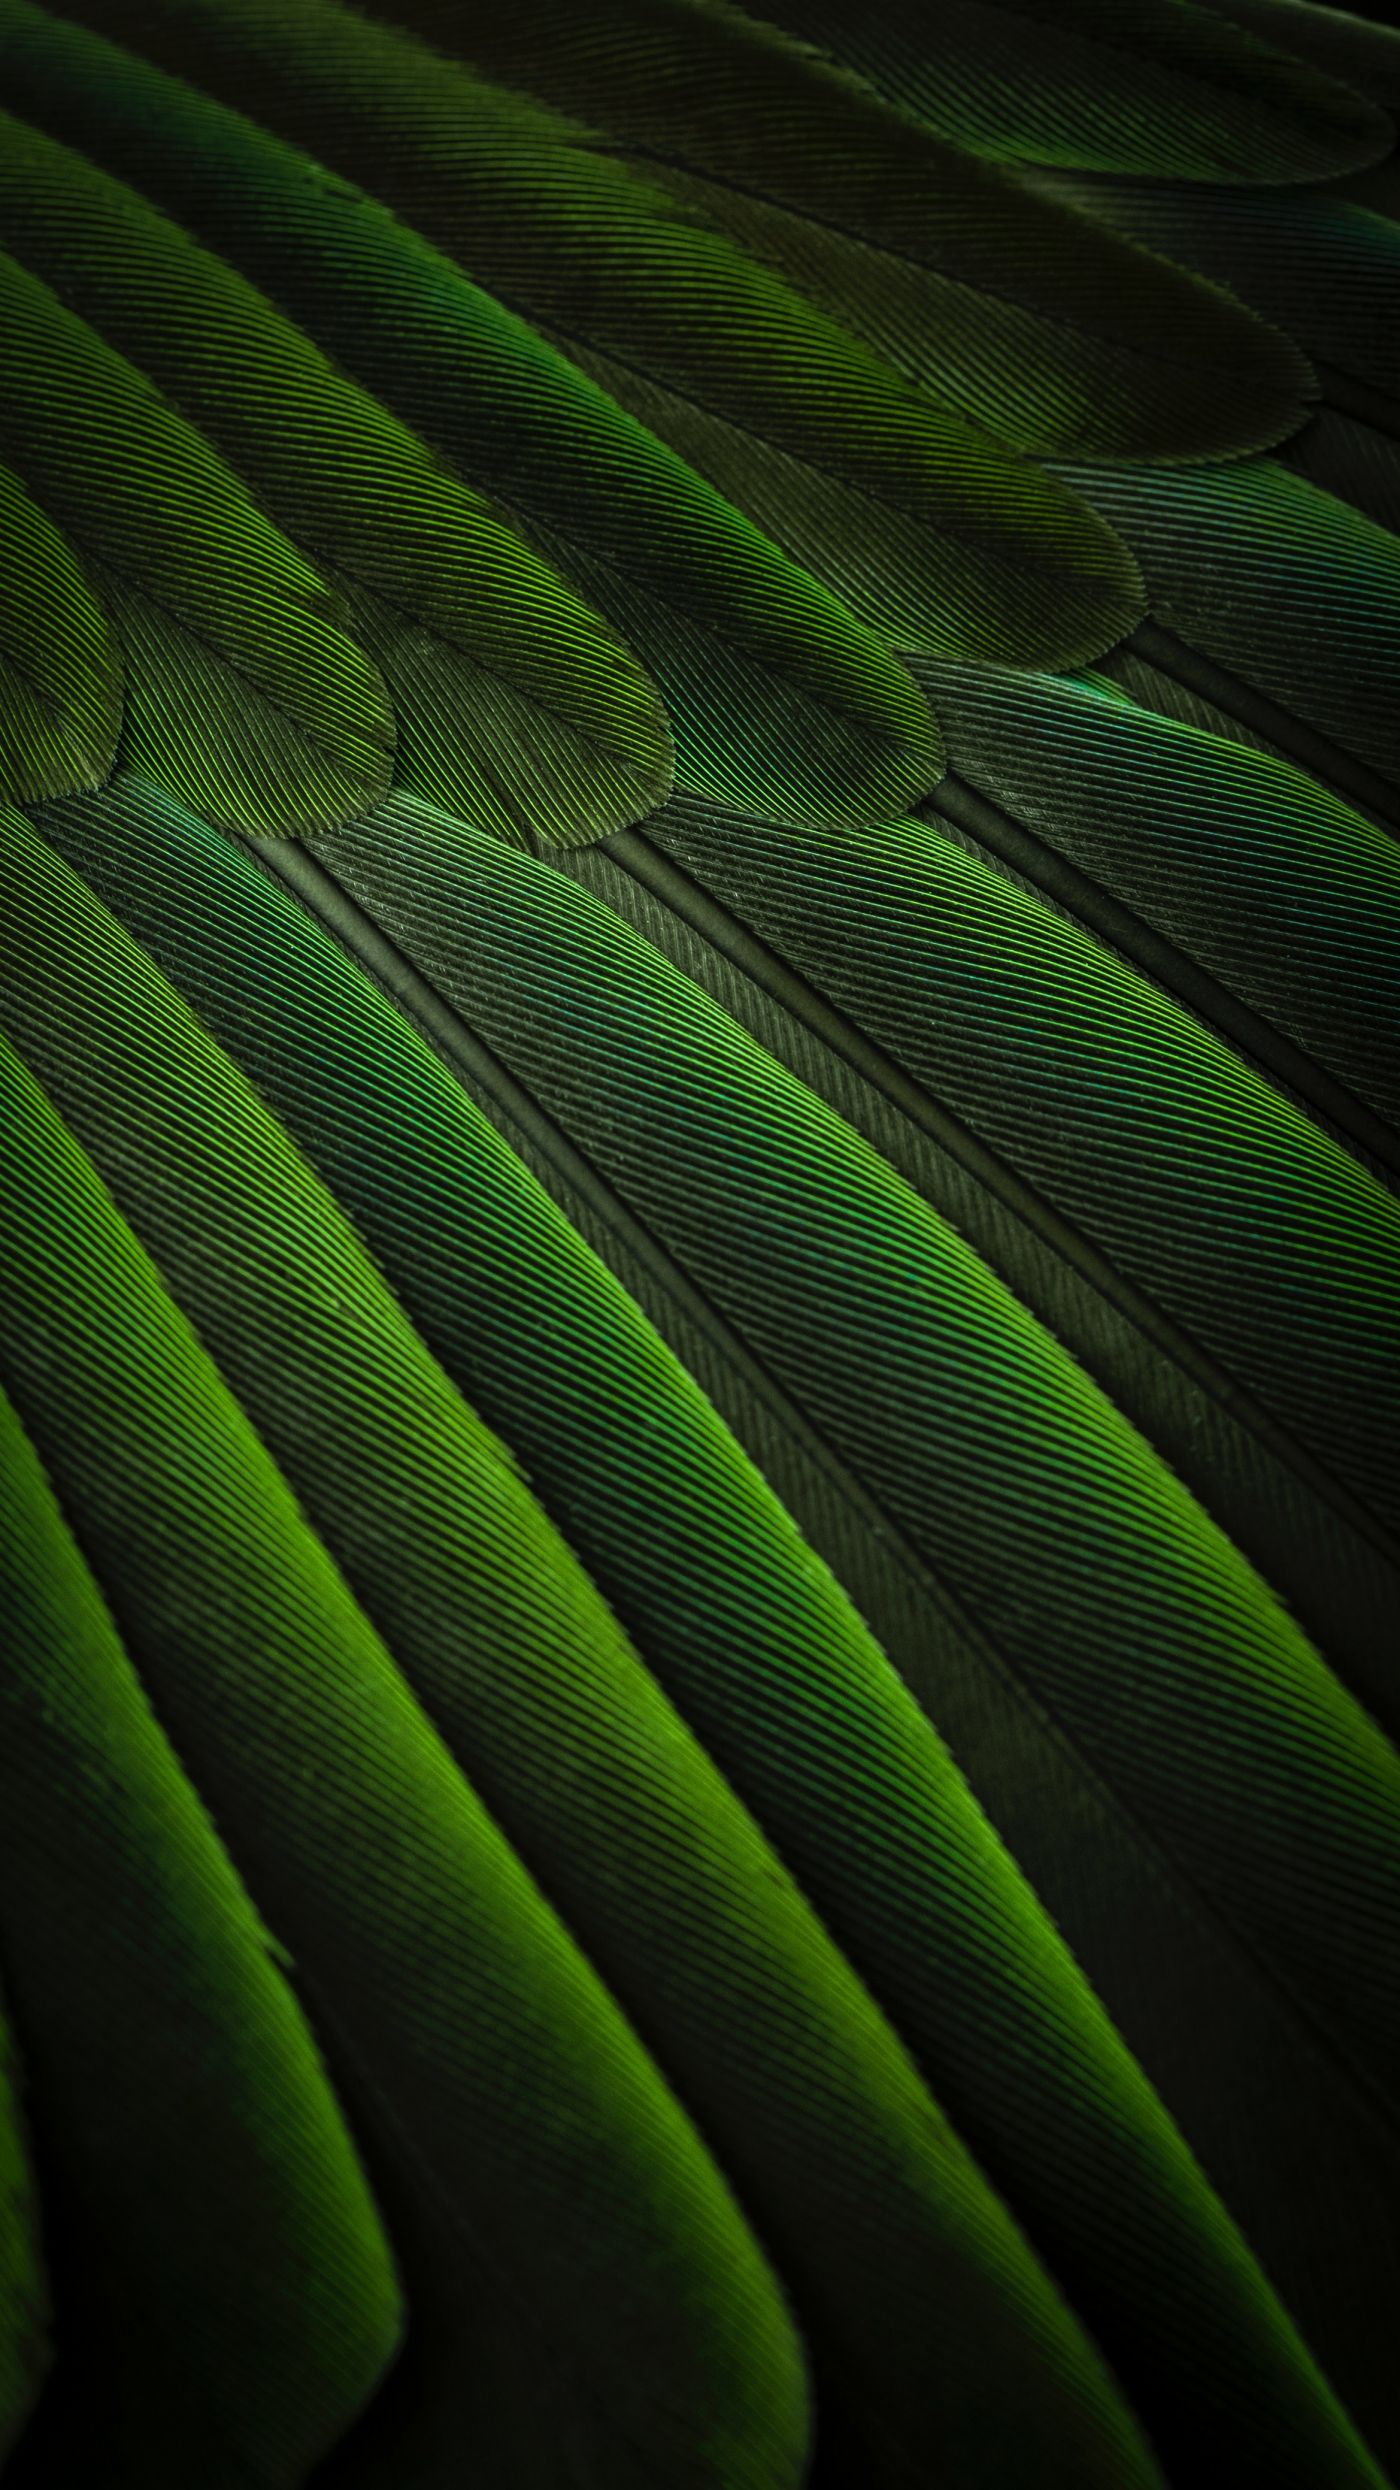 高清晰绿色孔雀羽毛壁纸 欧莱凯设计网 08php Com